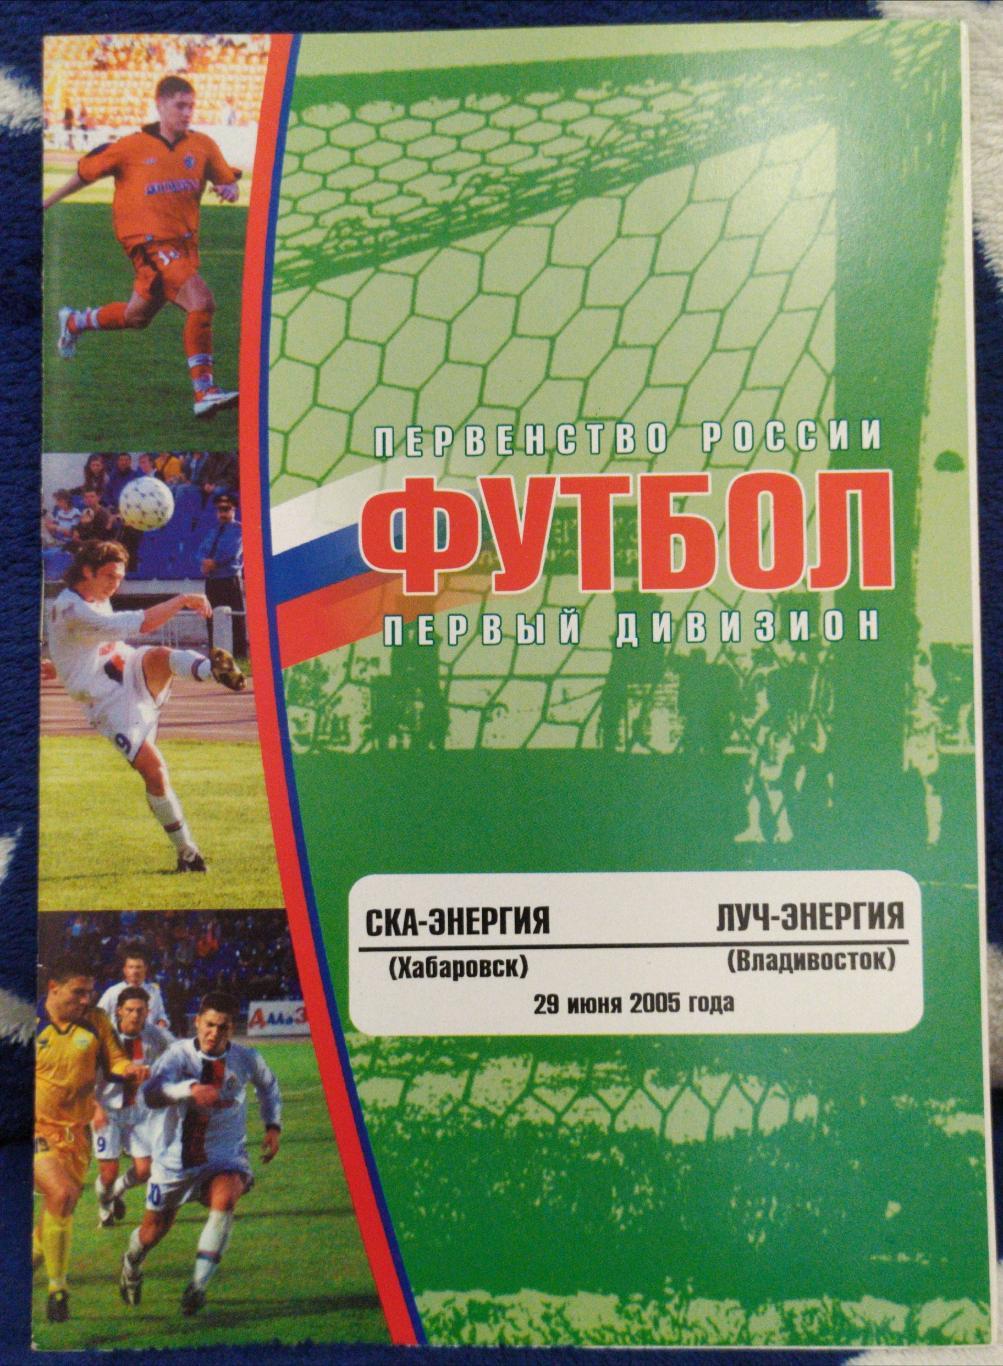 Ска(Хабаровск) - Луч(Владивосток). 1 дивизион. 29/06/2005